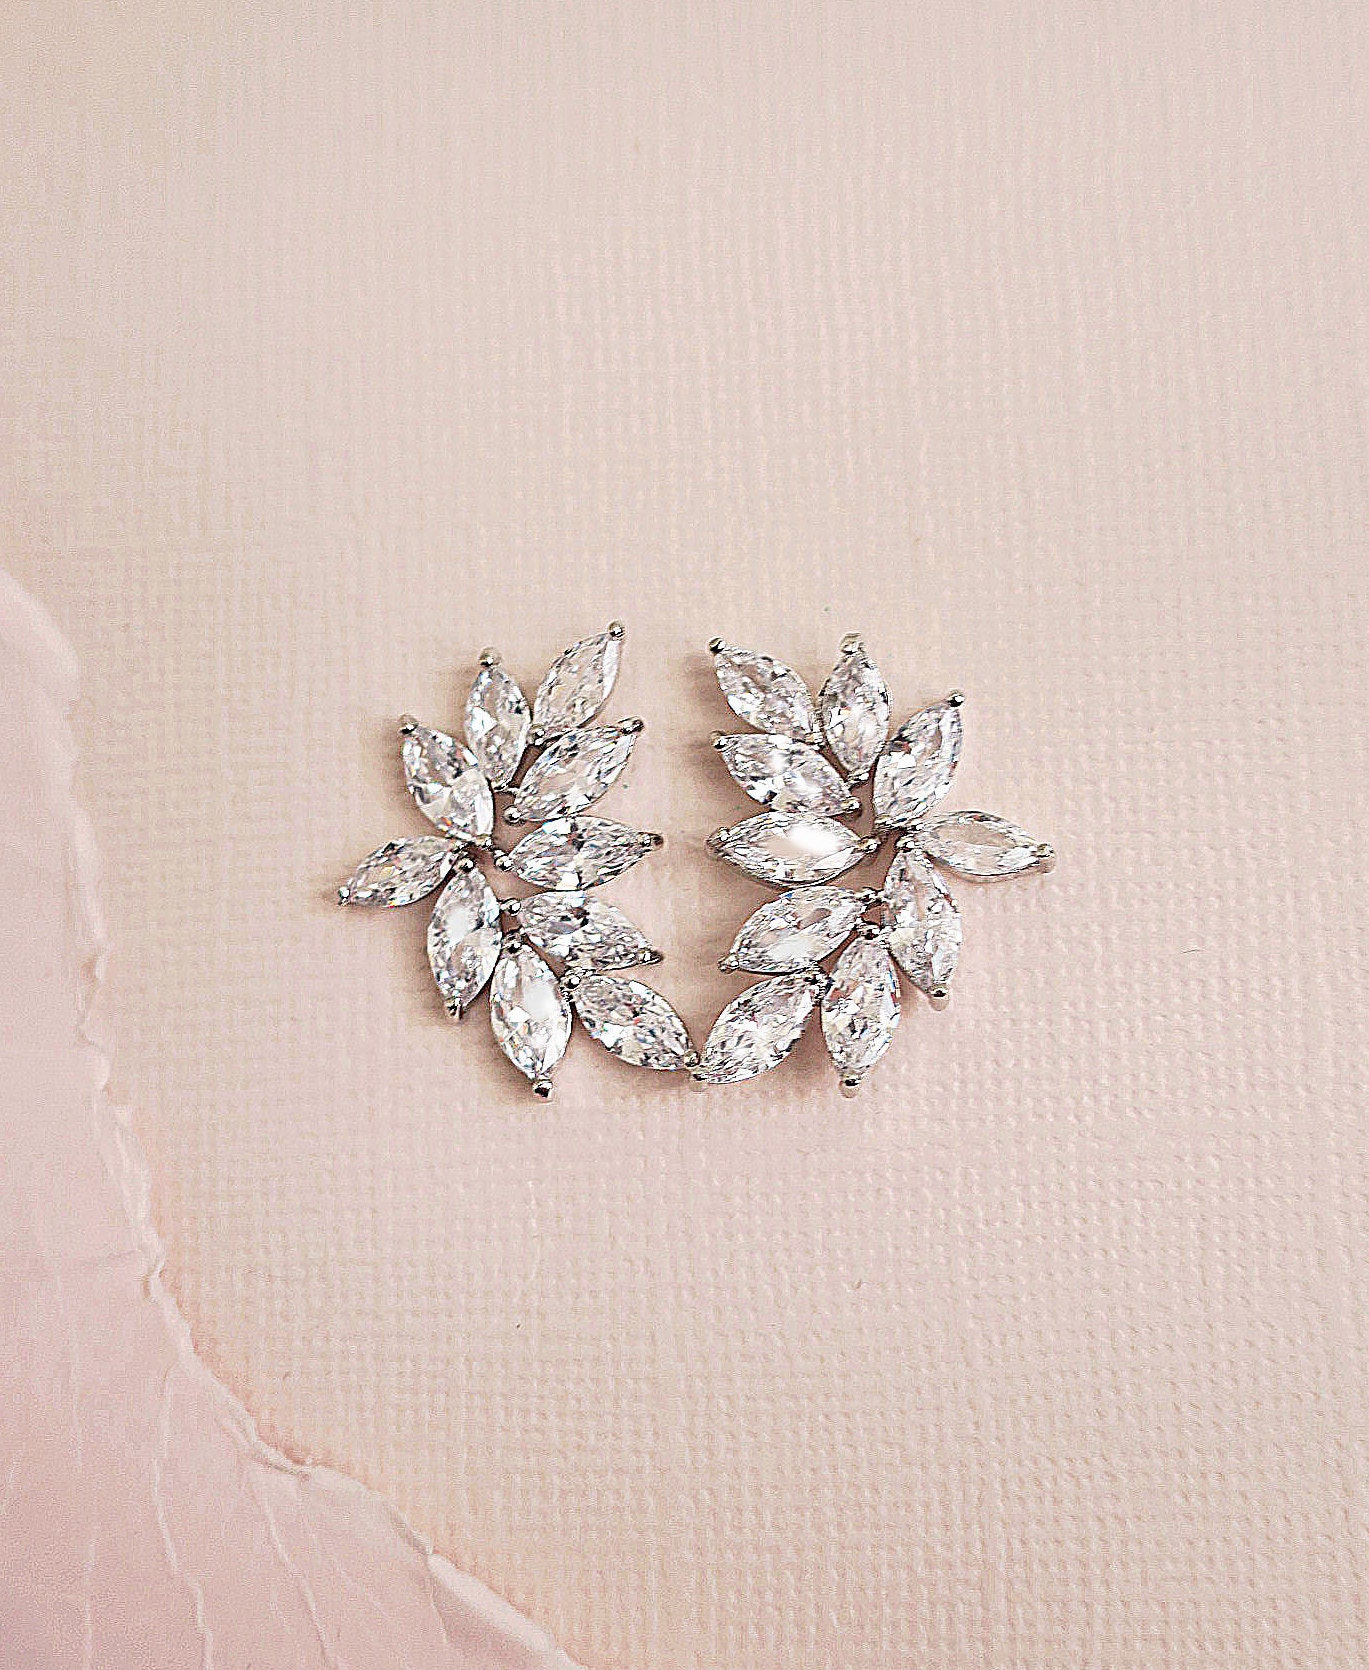 Crystal Bridal Earrings Wedding Earrings 1 Leaf Cluster | Etsy